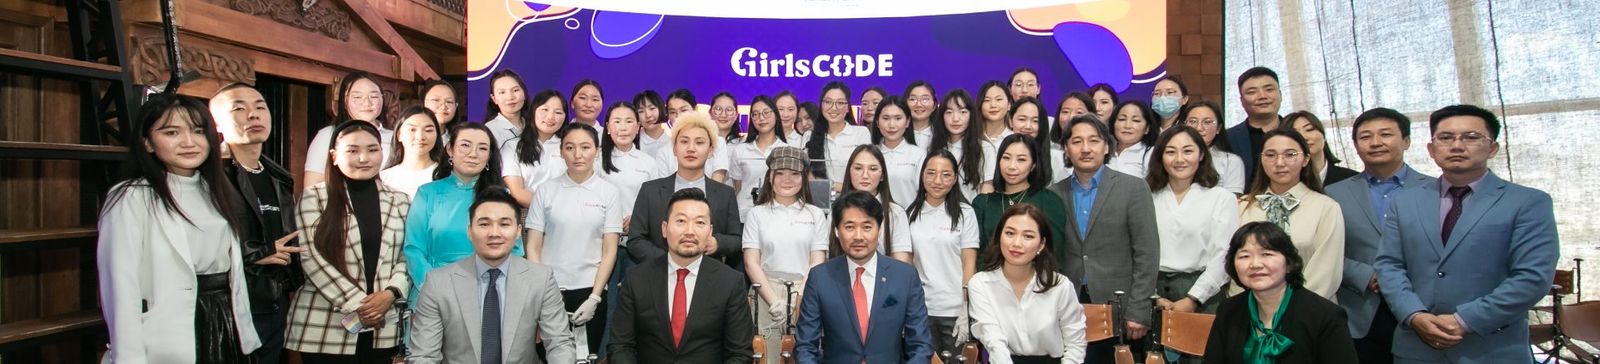 Код бичих охидын хөтөлбөр нээлтээ хийлээ